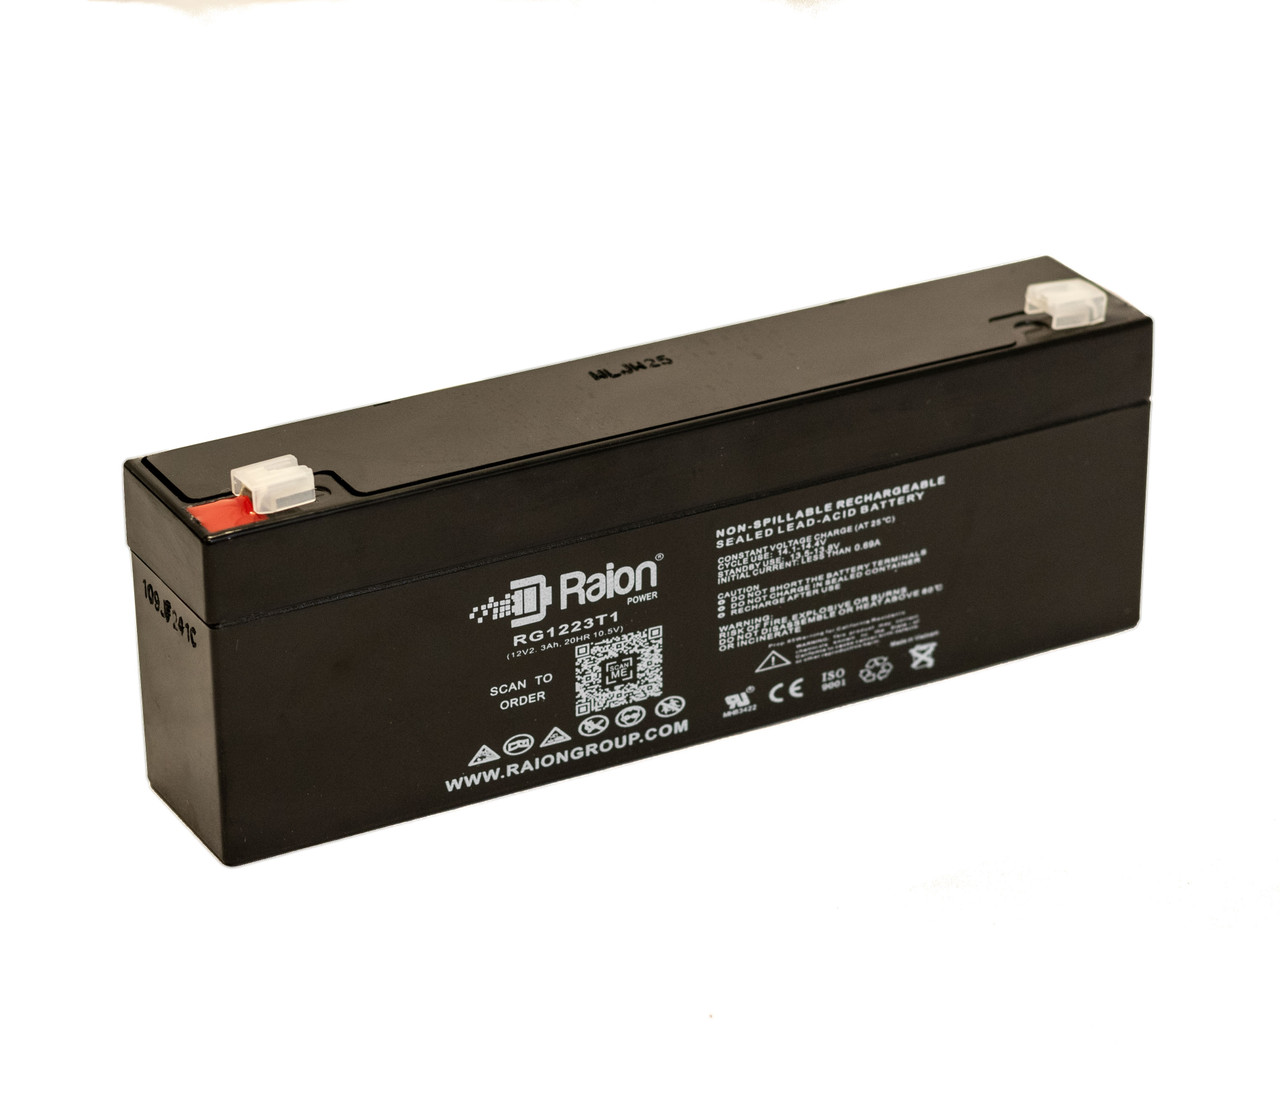 Raion Power RG1223T1 Replacement Battery for Guardian Douglas DG122F